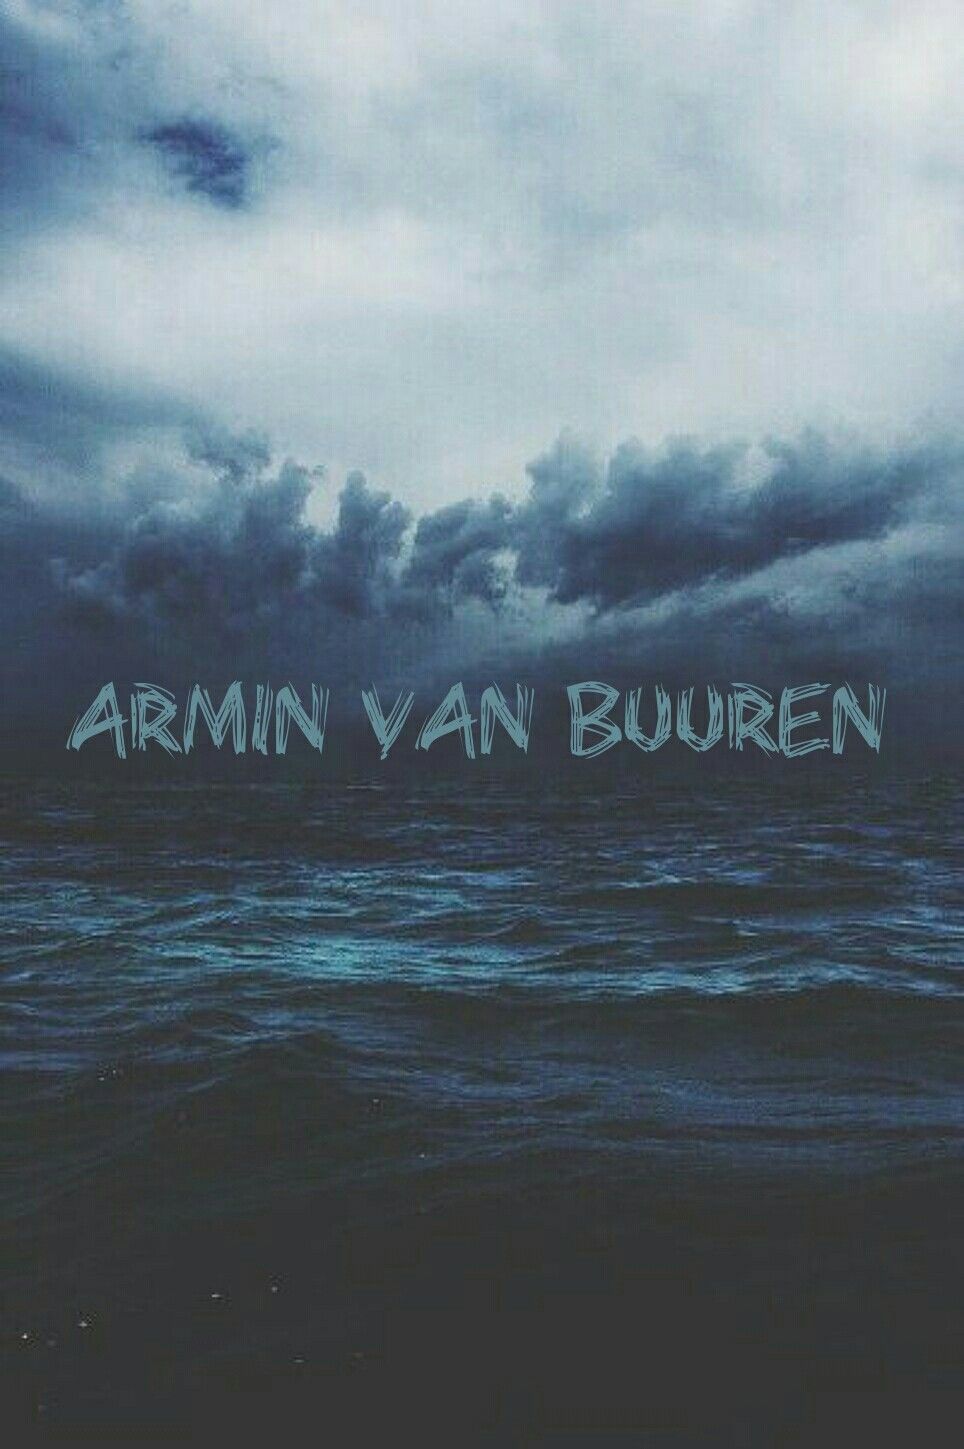 Armin Van Buuren Wallpaper - Your Ocean I M Ankle Deep , HD Wallpaper & Backgrounds